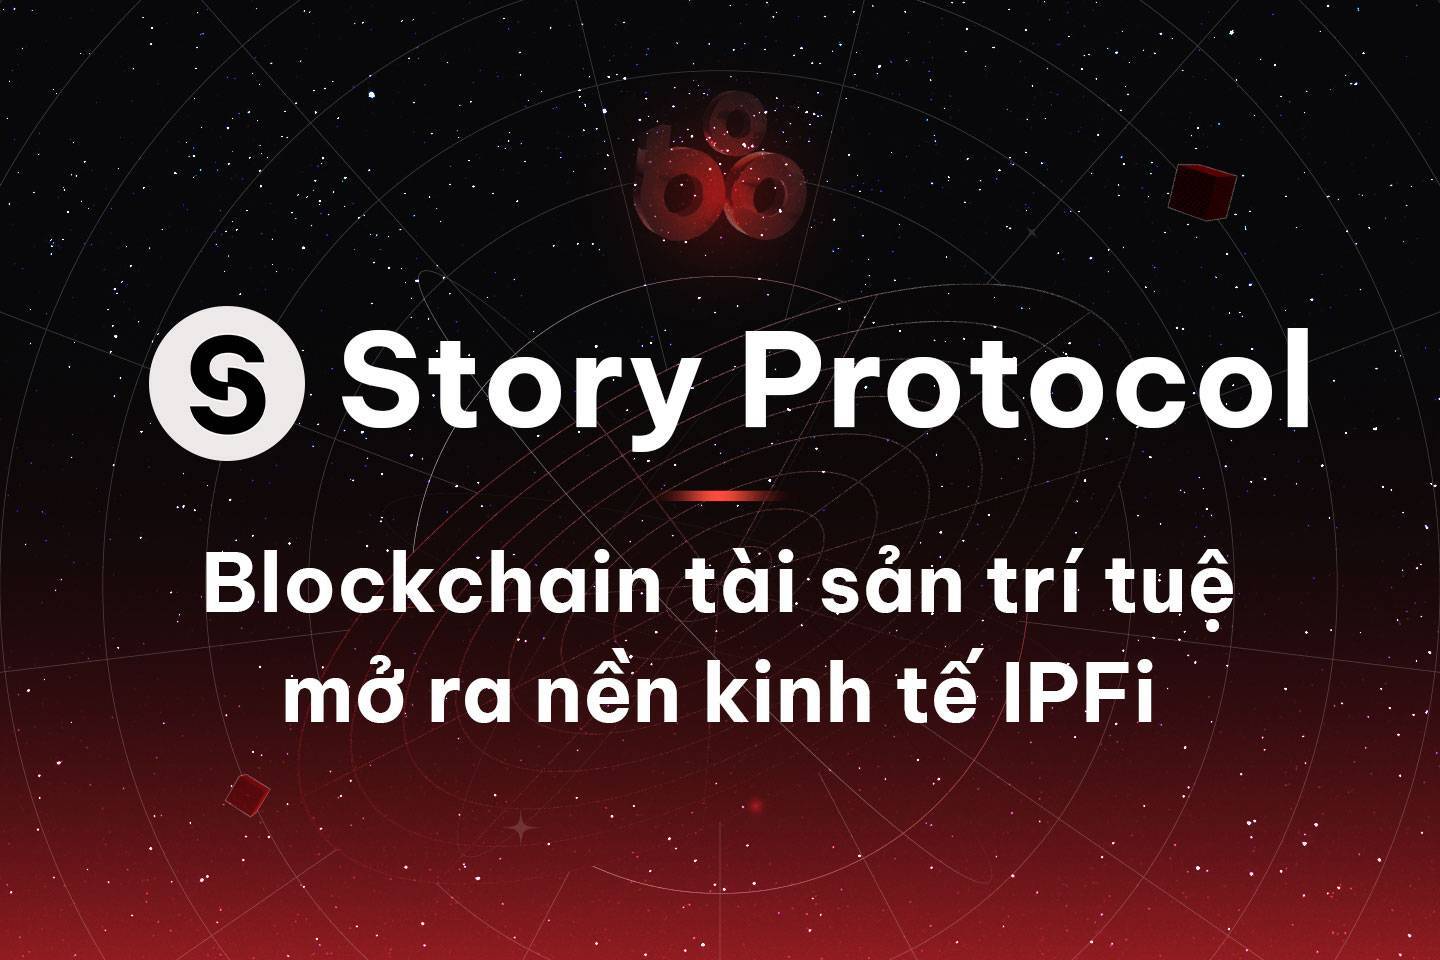 Story Protocol - Blockchain Tài Sản Trí Tuệ Mở Ra Nền Kinh Tế Ipfi